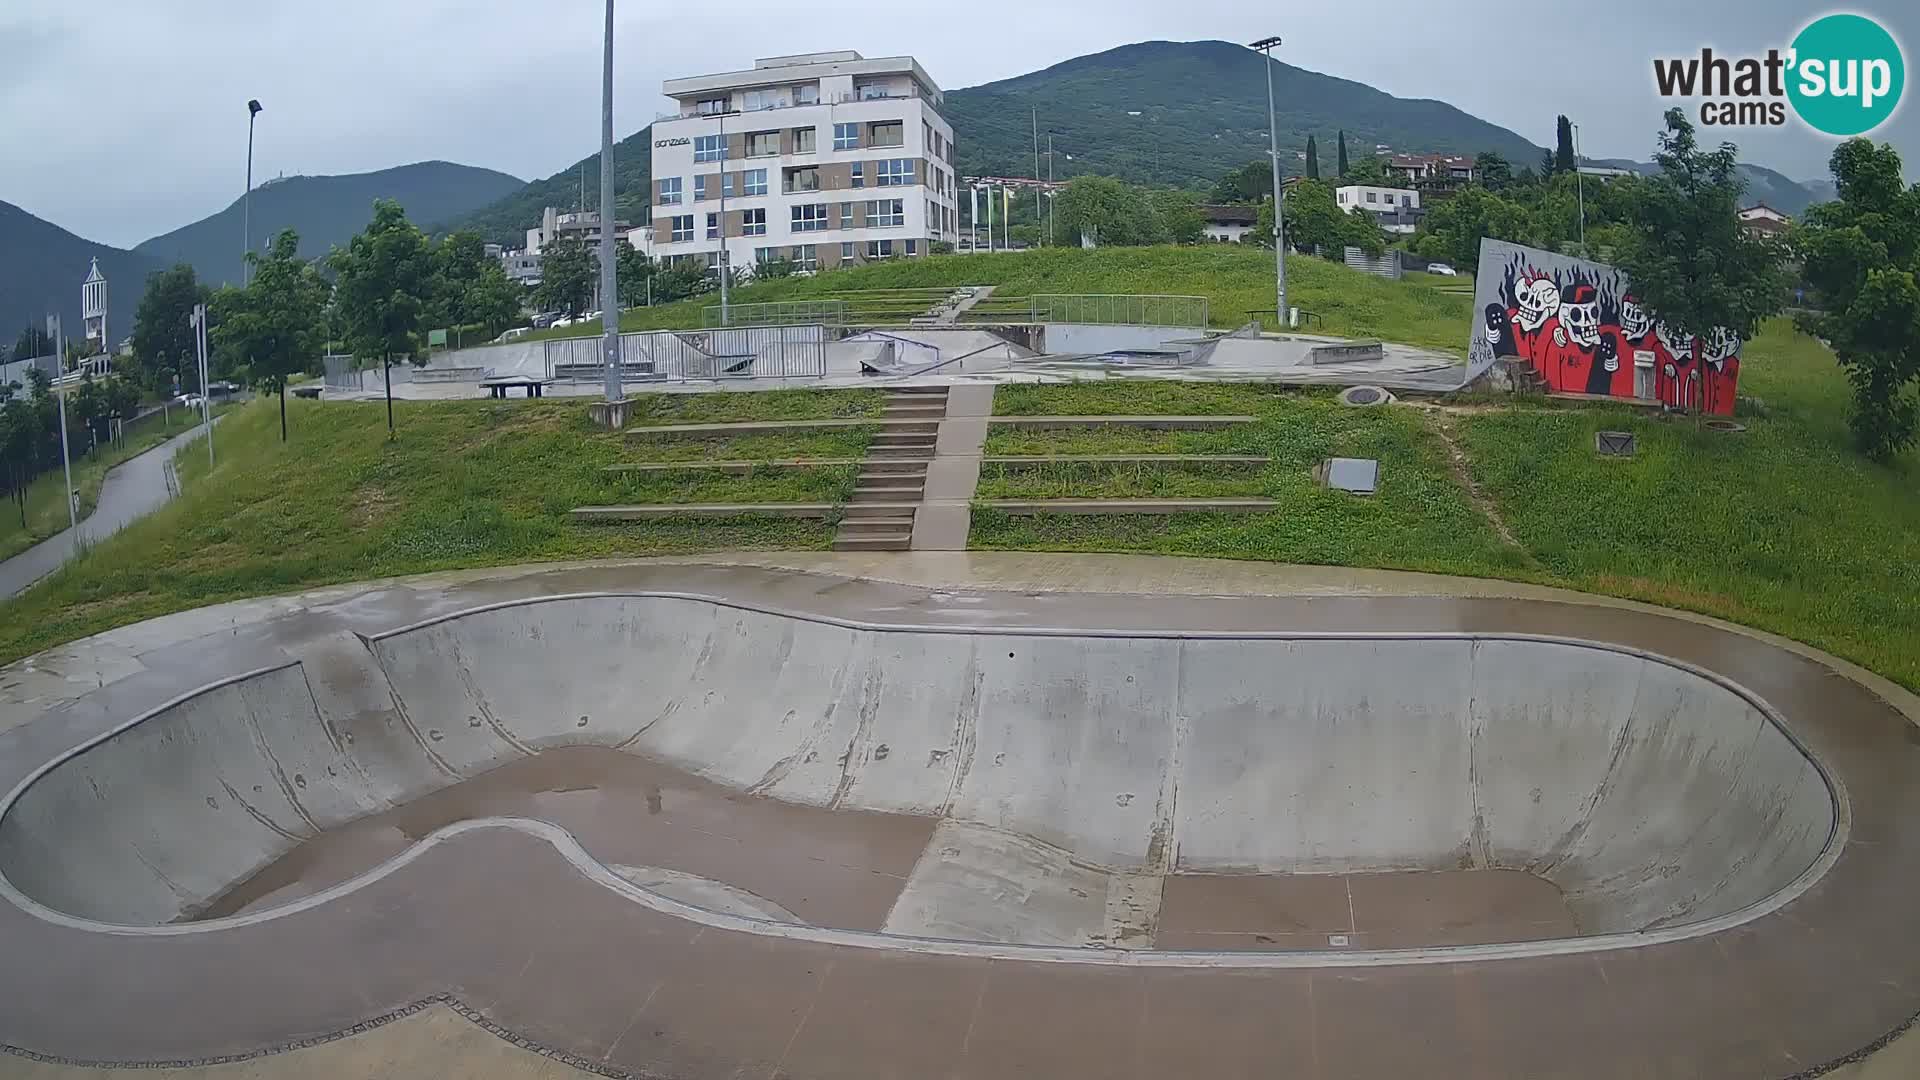 Skate park Webcam Nova Gorica – Slovenia